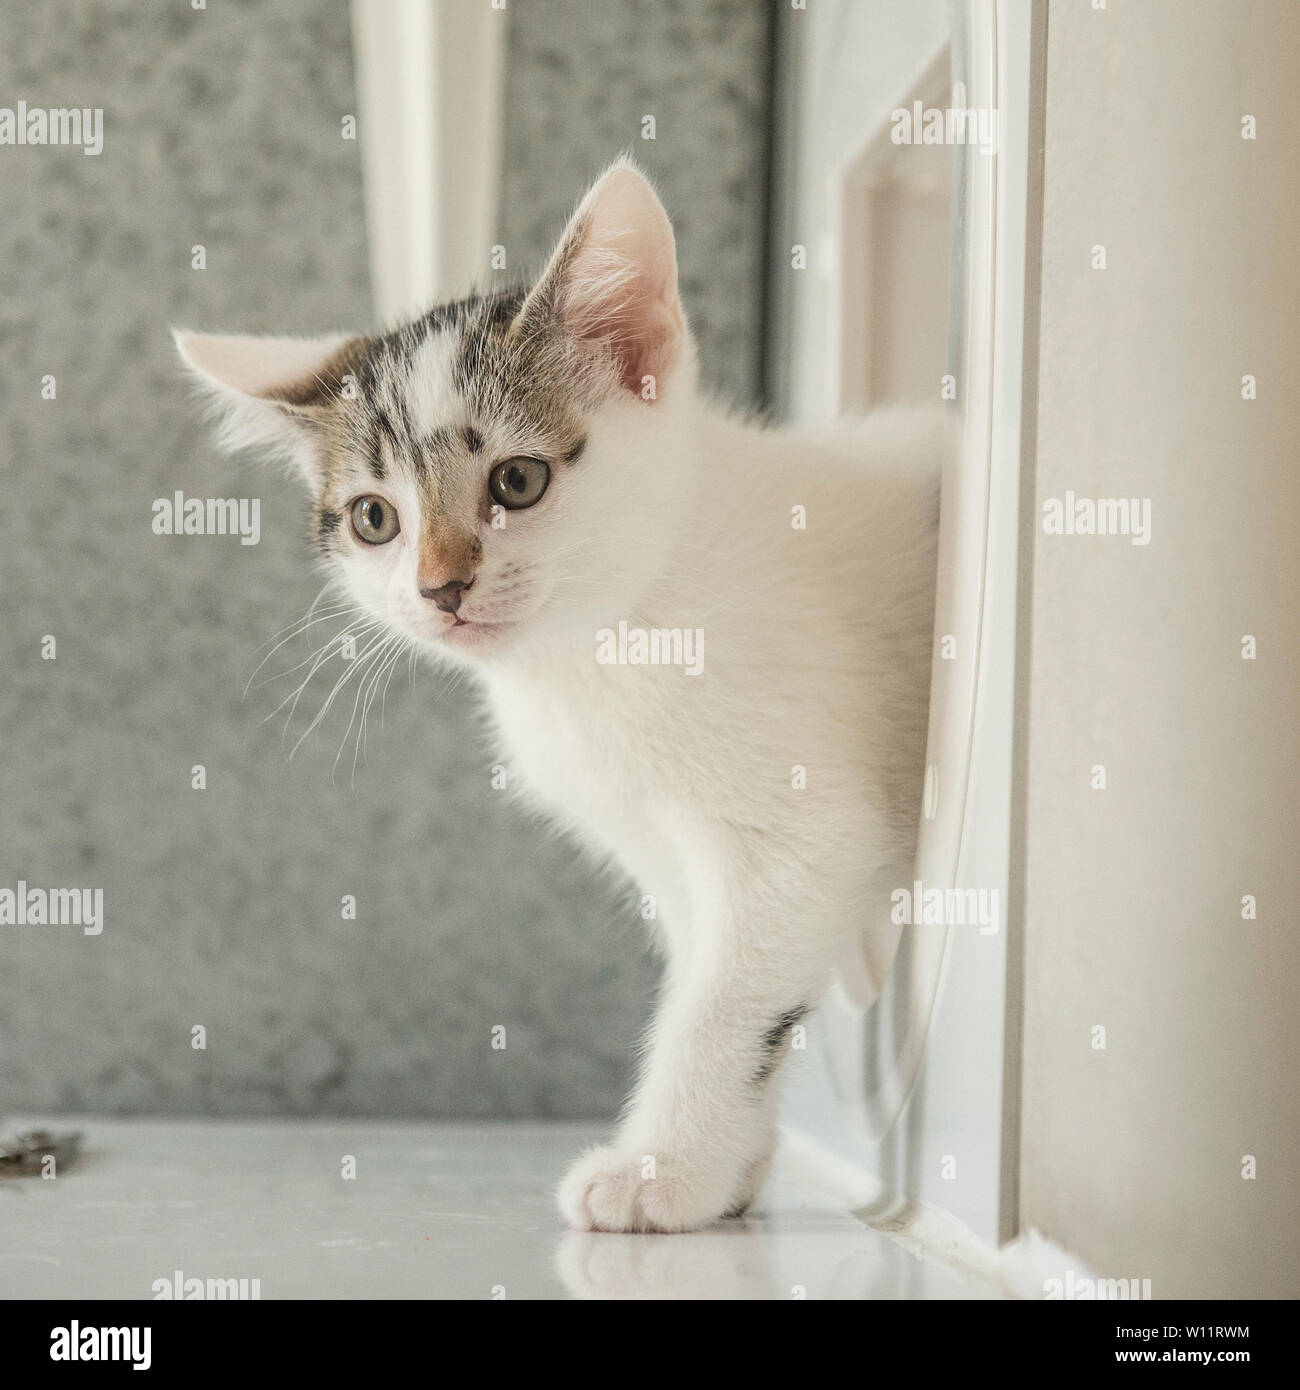 kitten using cat flap door Stock Photo